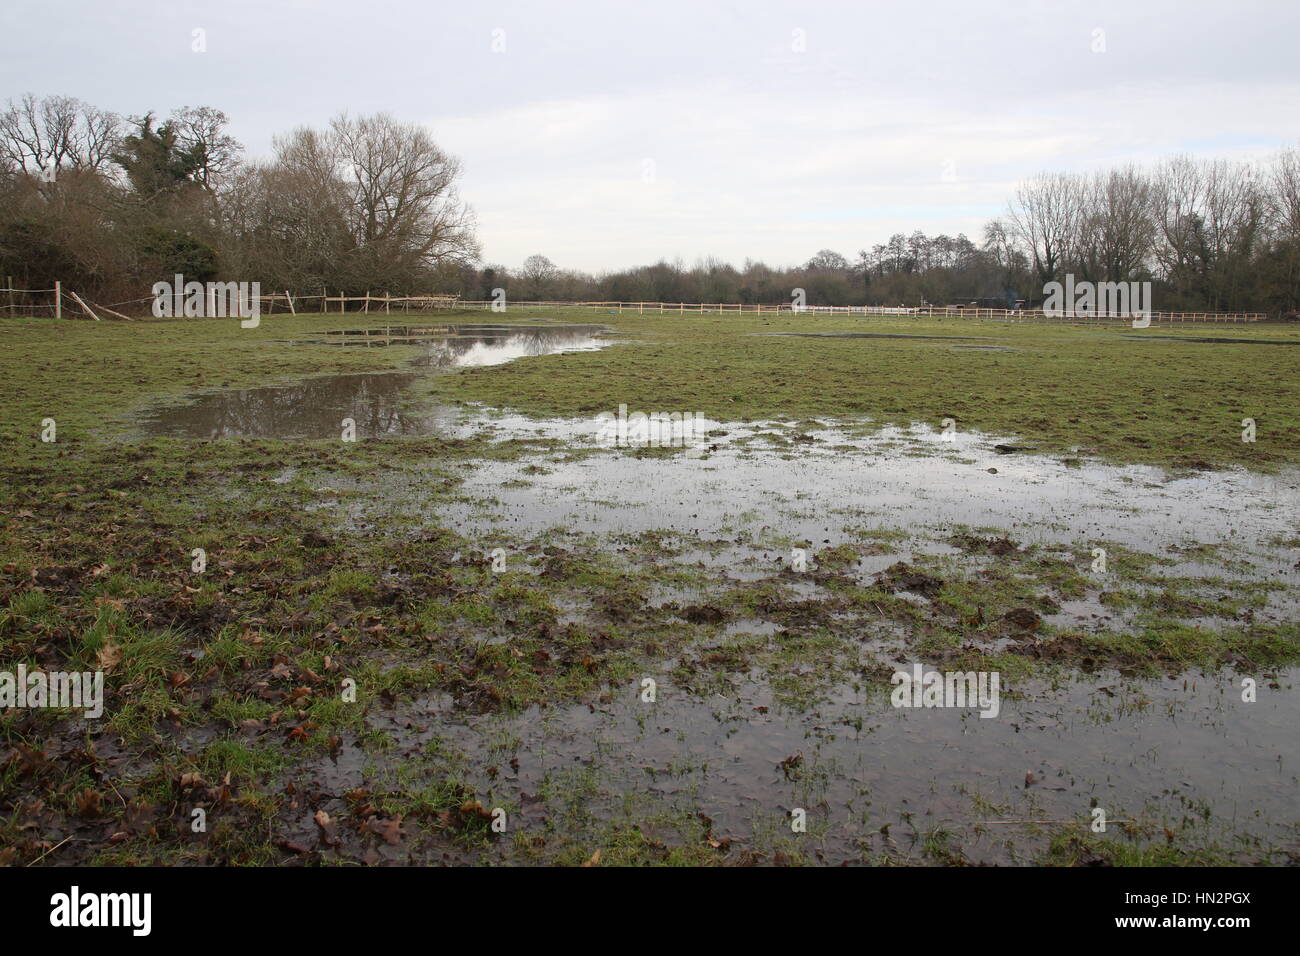 Un champ de ferme inondée après de fortes pluies Banque D'Images